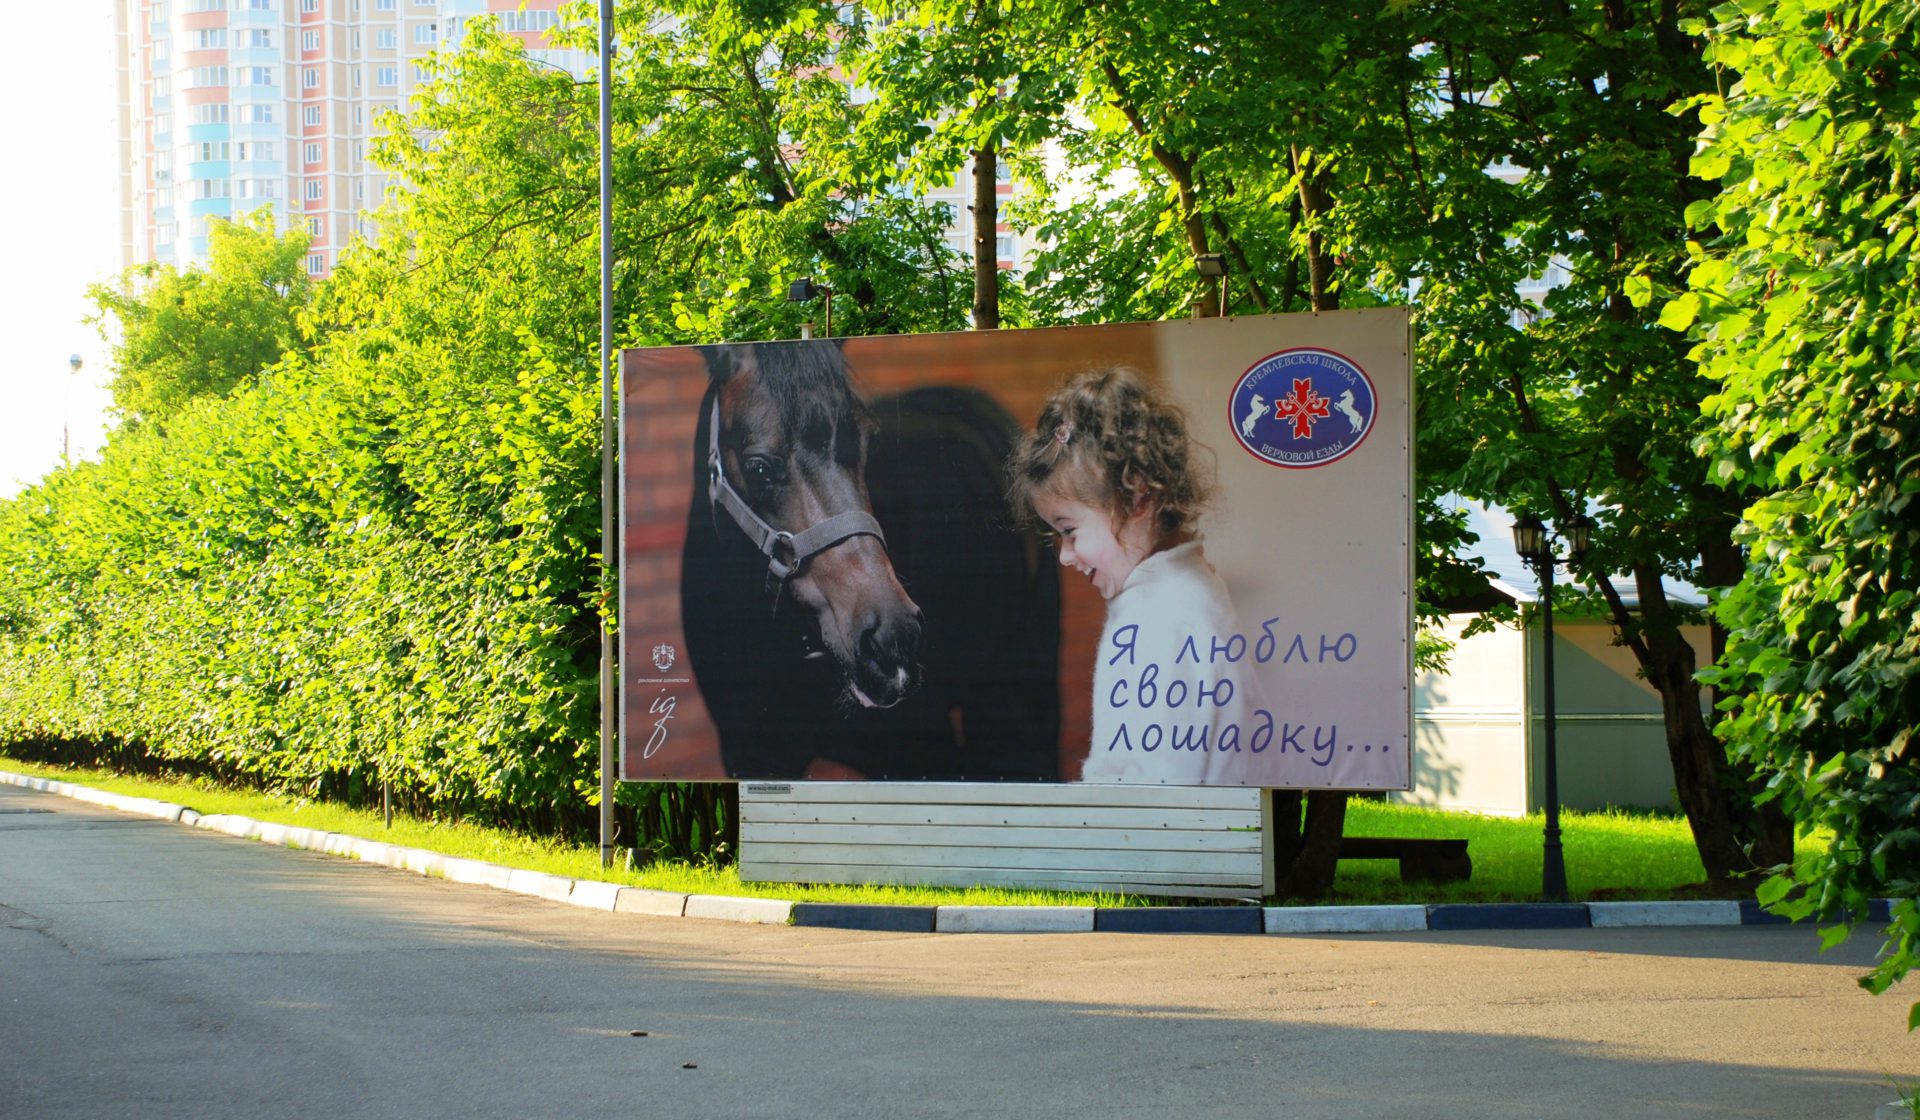 Баннер с лошадьми. Рекламный баннер с лошадьми. Лошадь на билборде.